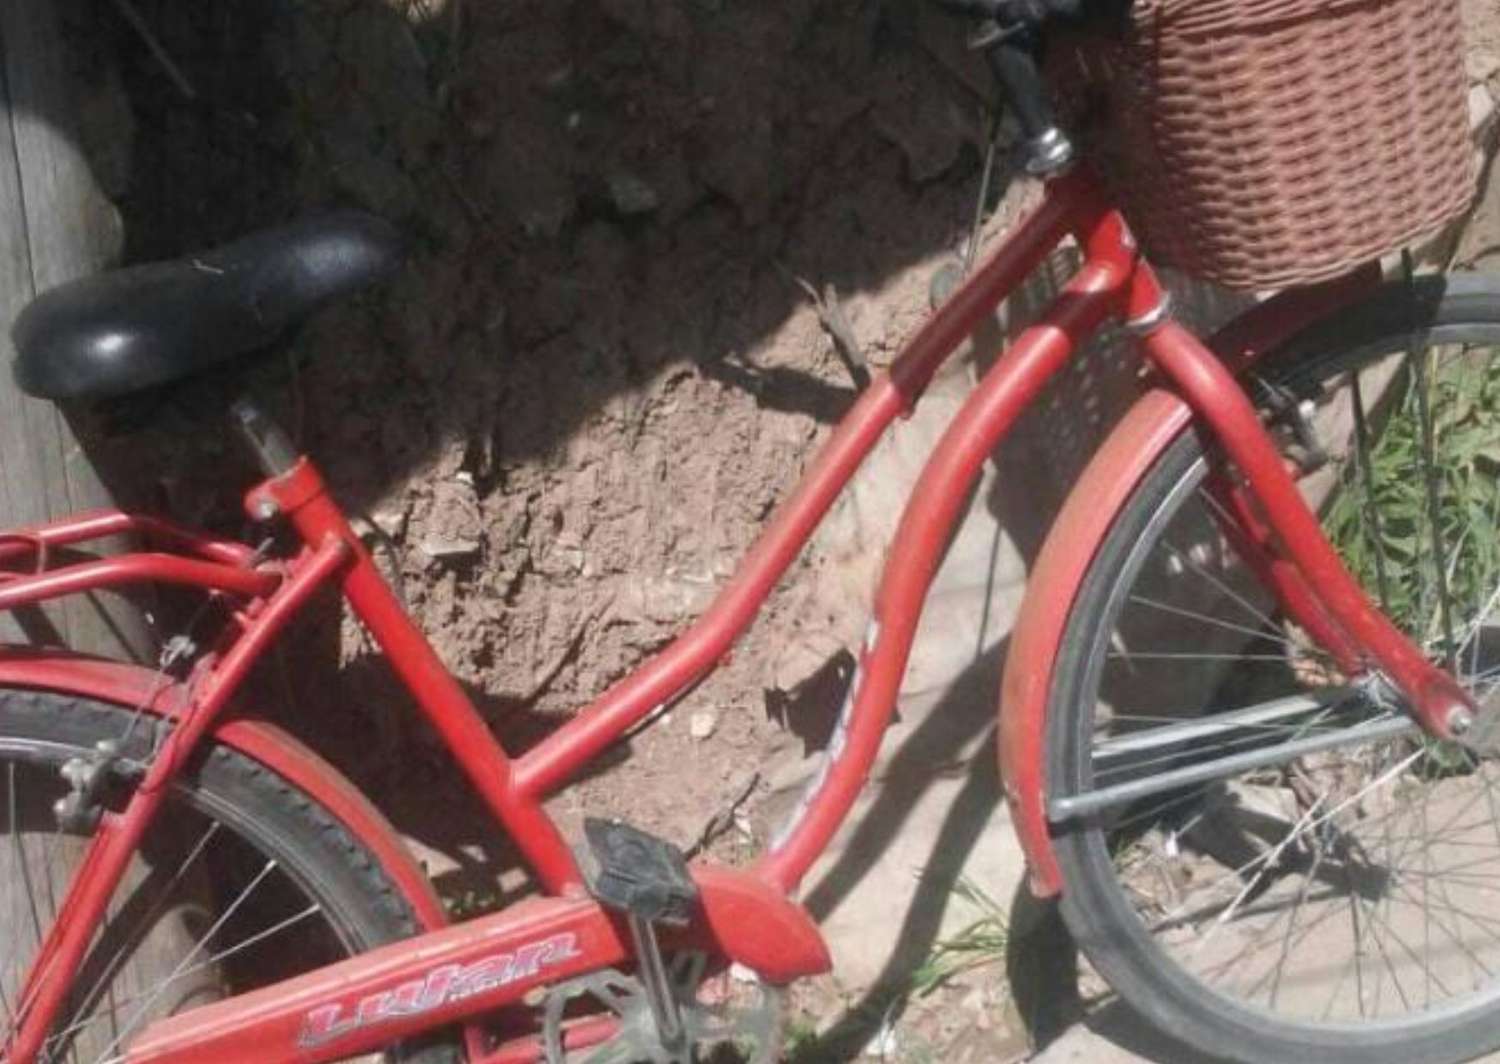 Le robaron la bici y la publicaron a la venta en Facebook